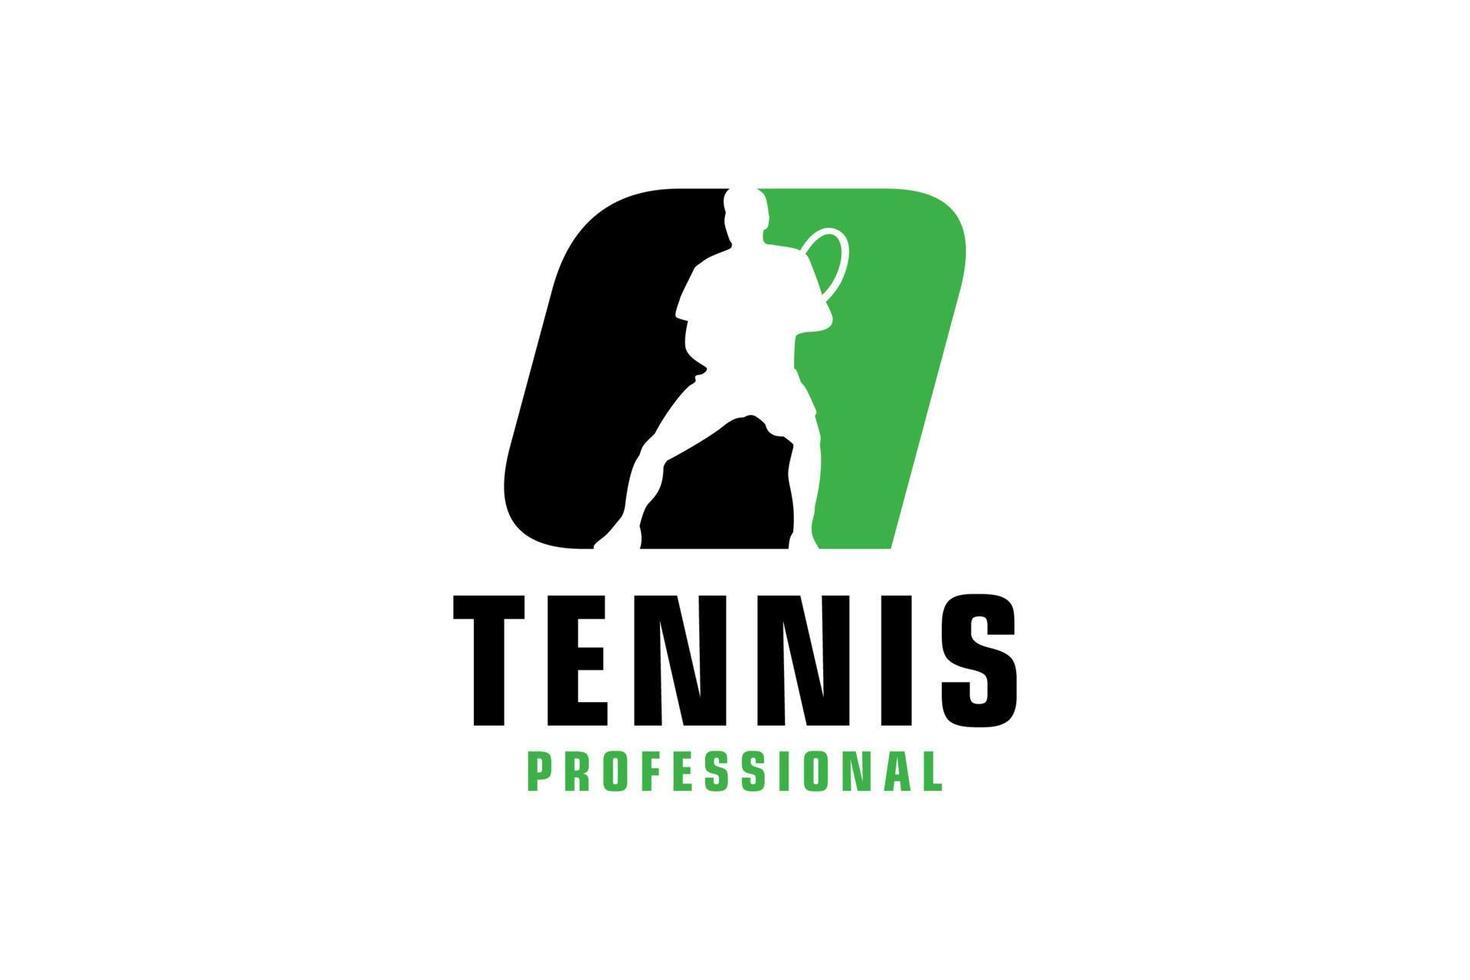 buchstabe q mit tennisspieler-silhouette-logo-design. Vektordesign-Vorlagenelemente für Sportteams oder Corporate Identity. vektor